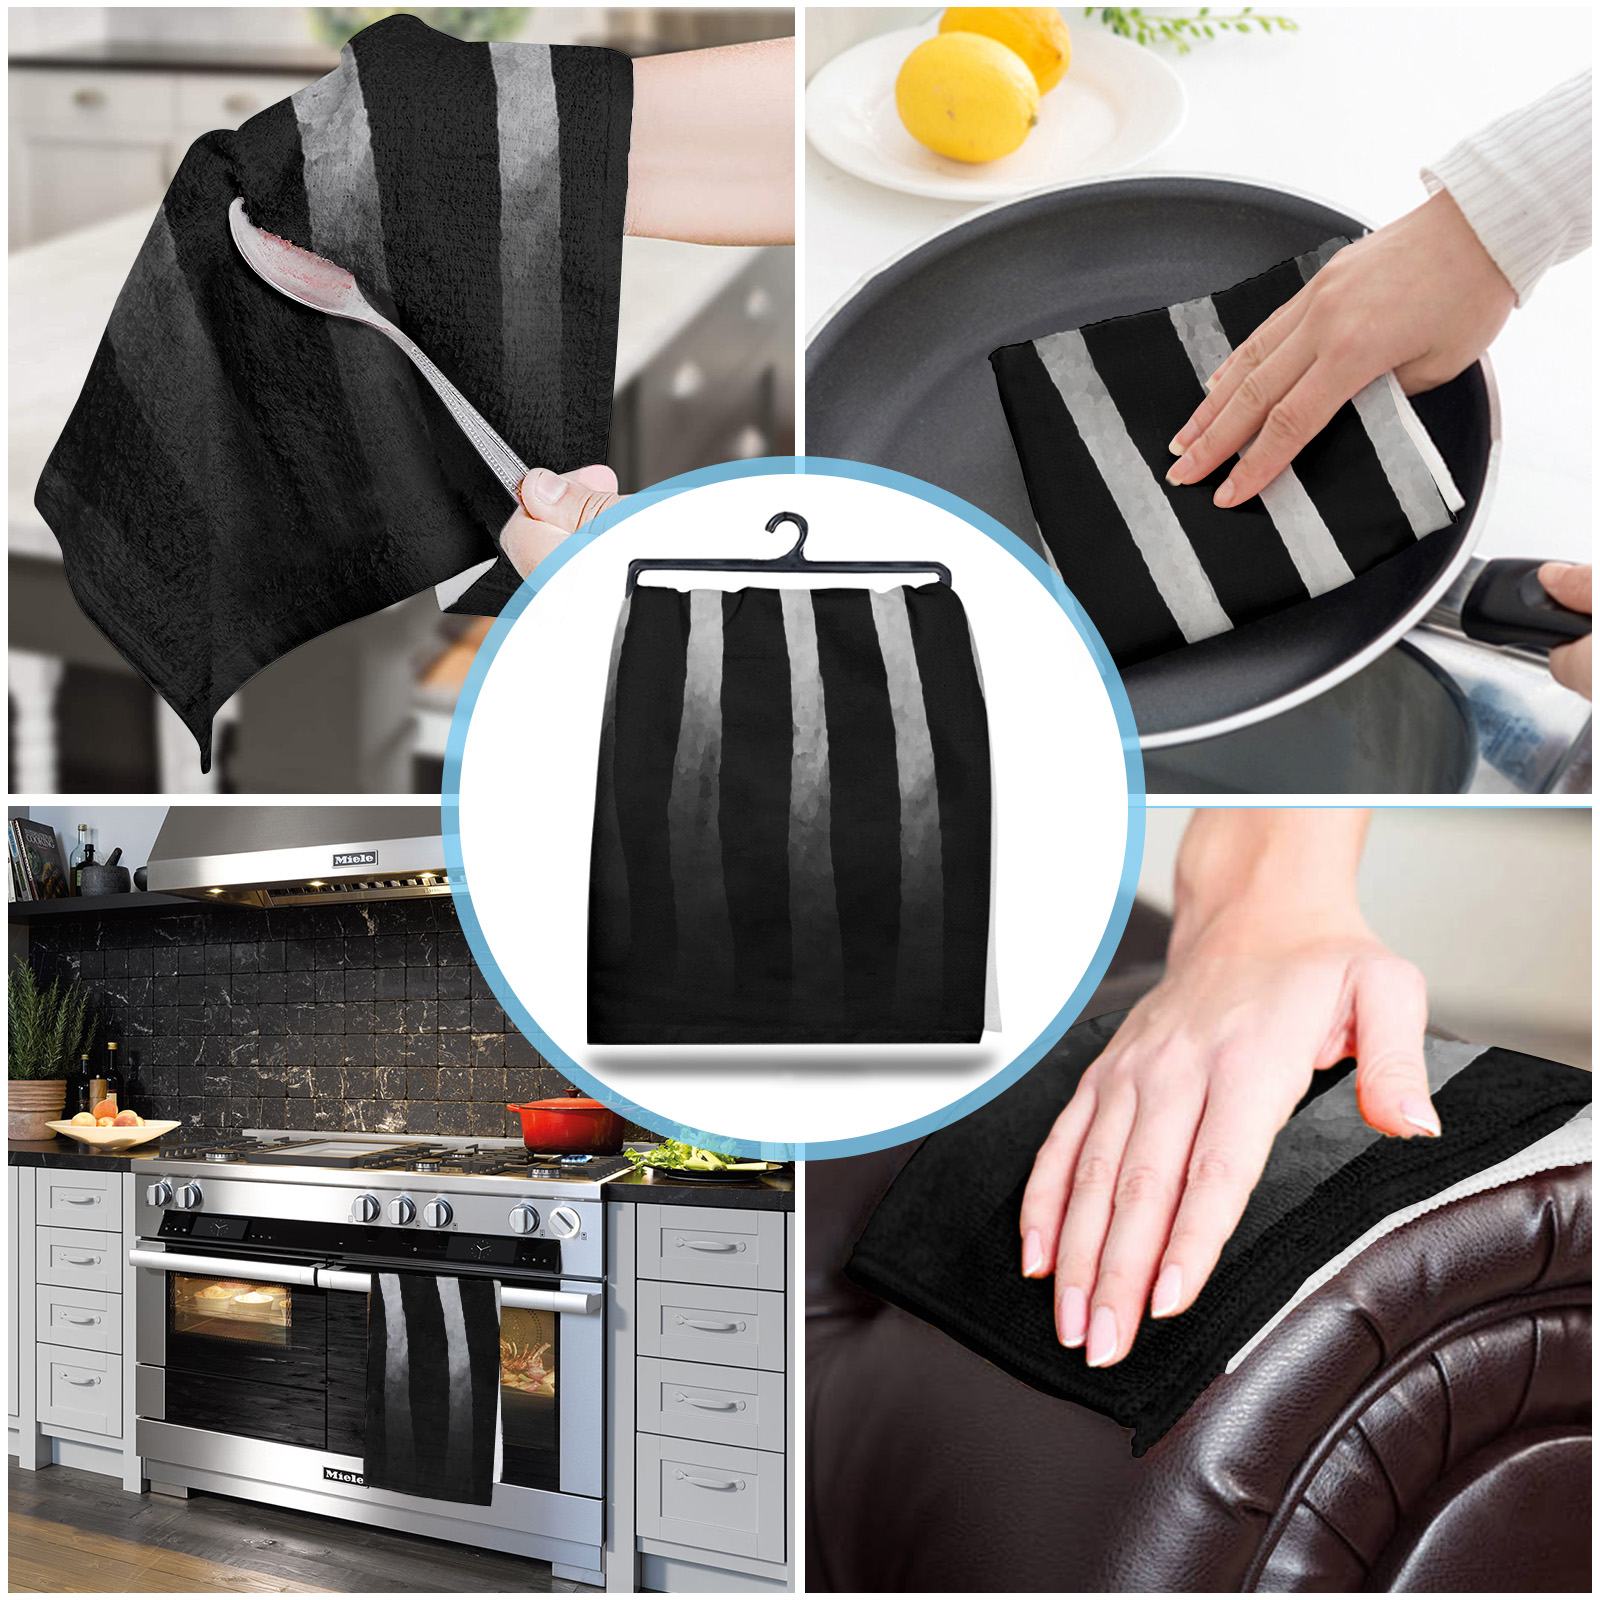 Zebra Black And White Stripes Closeup Kitchen Towels Household Kitchen ...